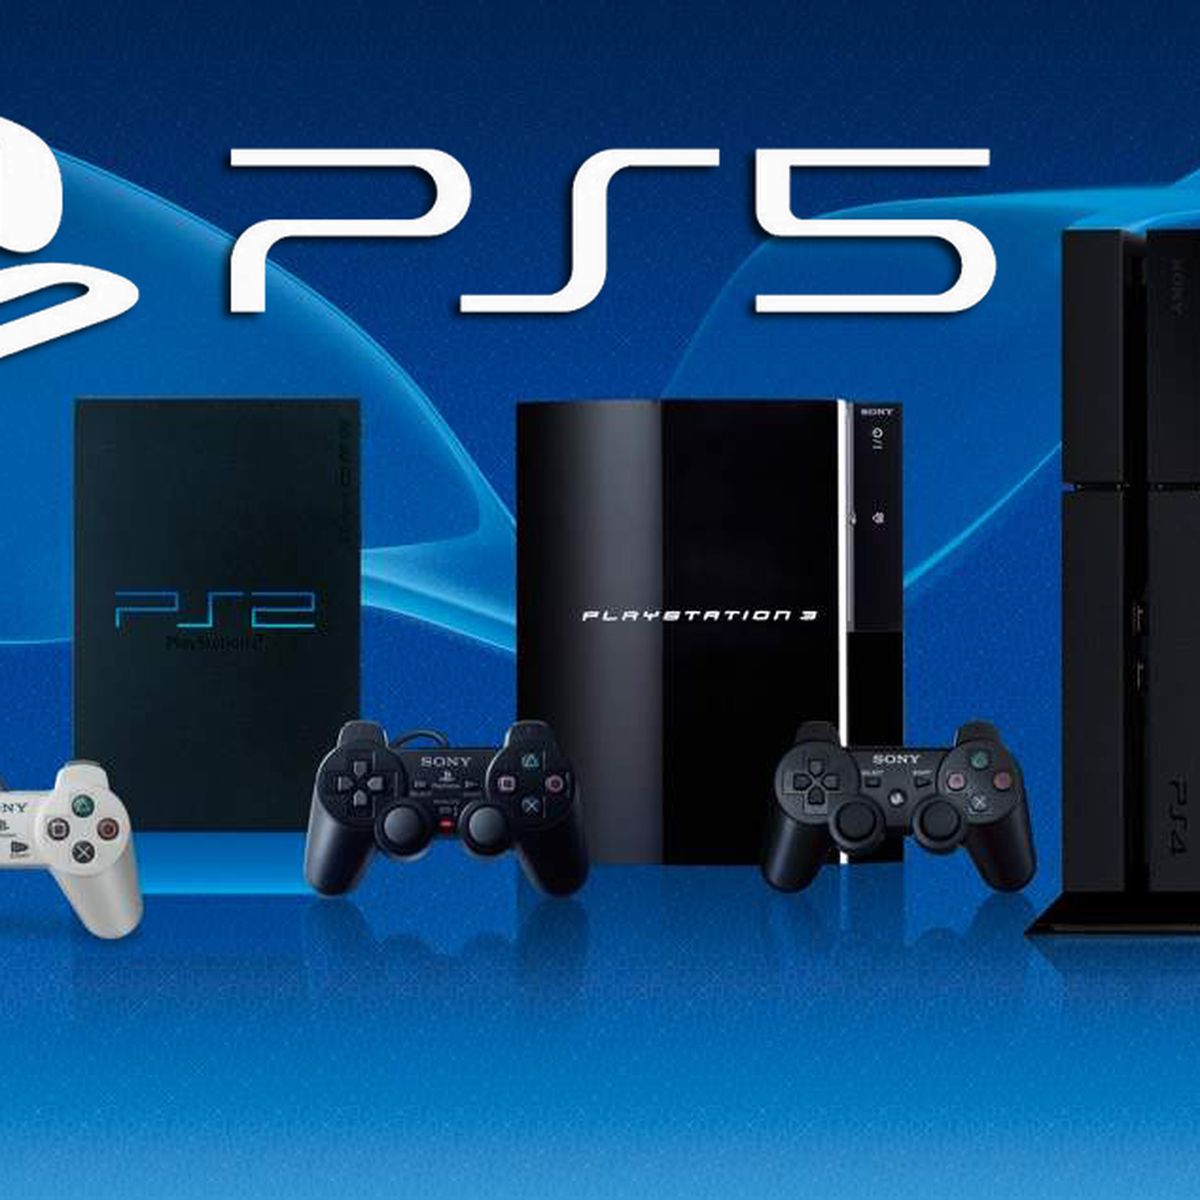 Retrocompatibilidad en PS5: juegos de PS4 con mejoras y todos los detalles